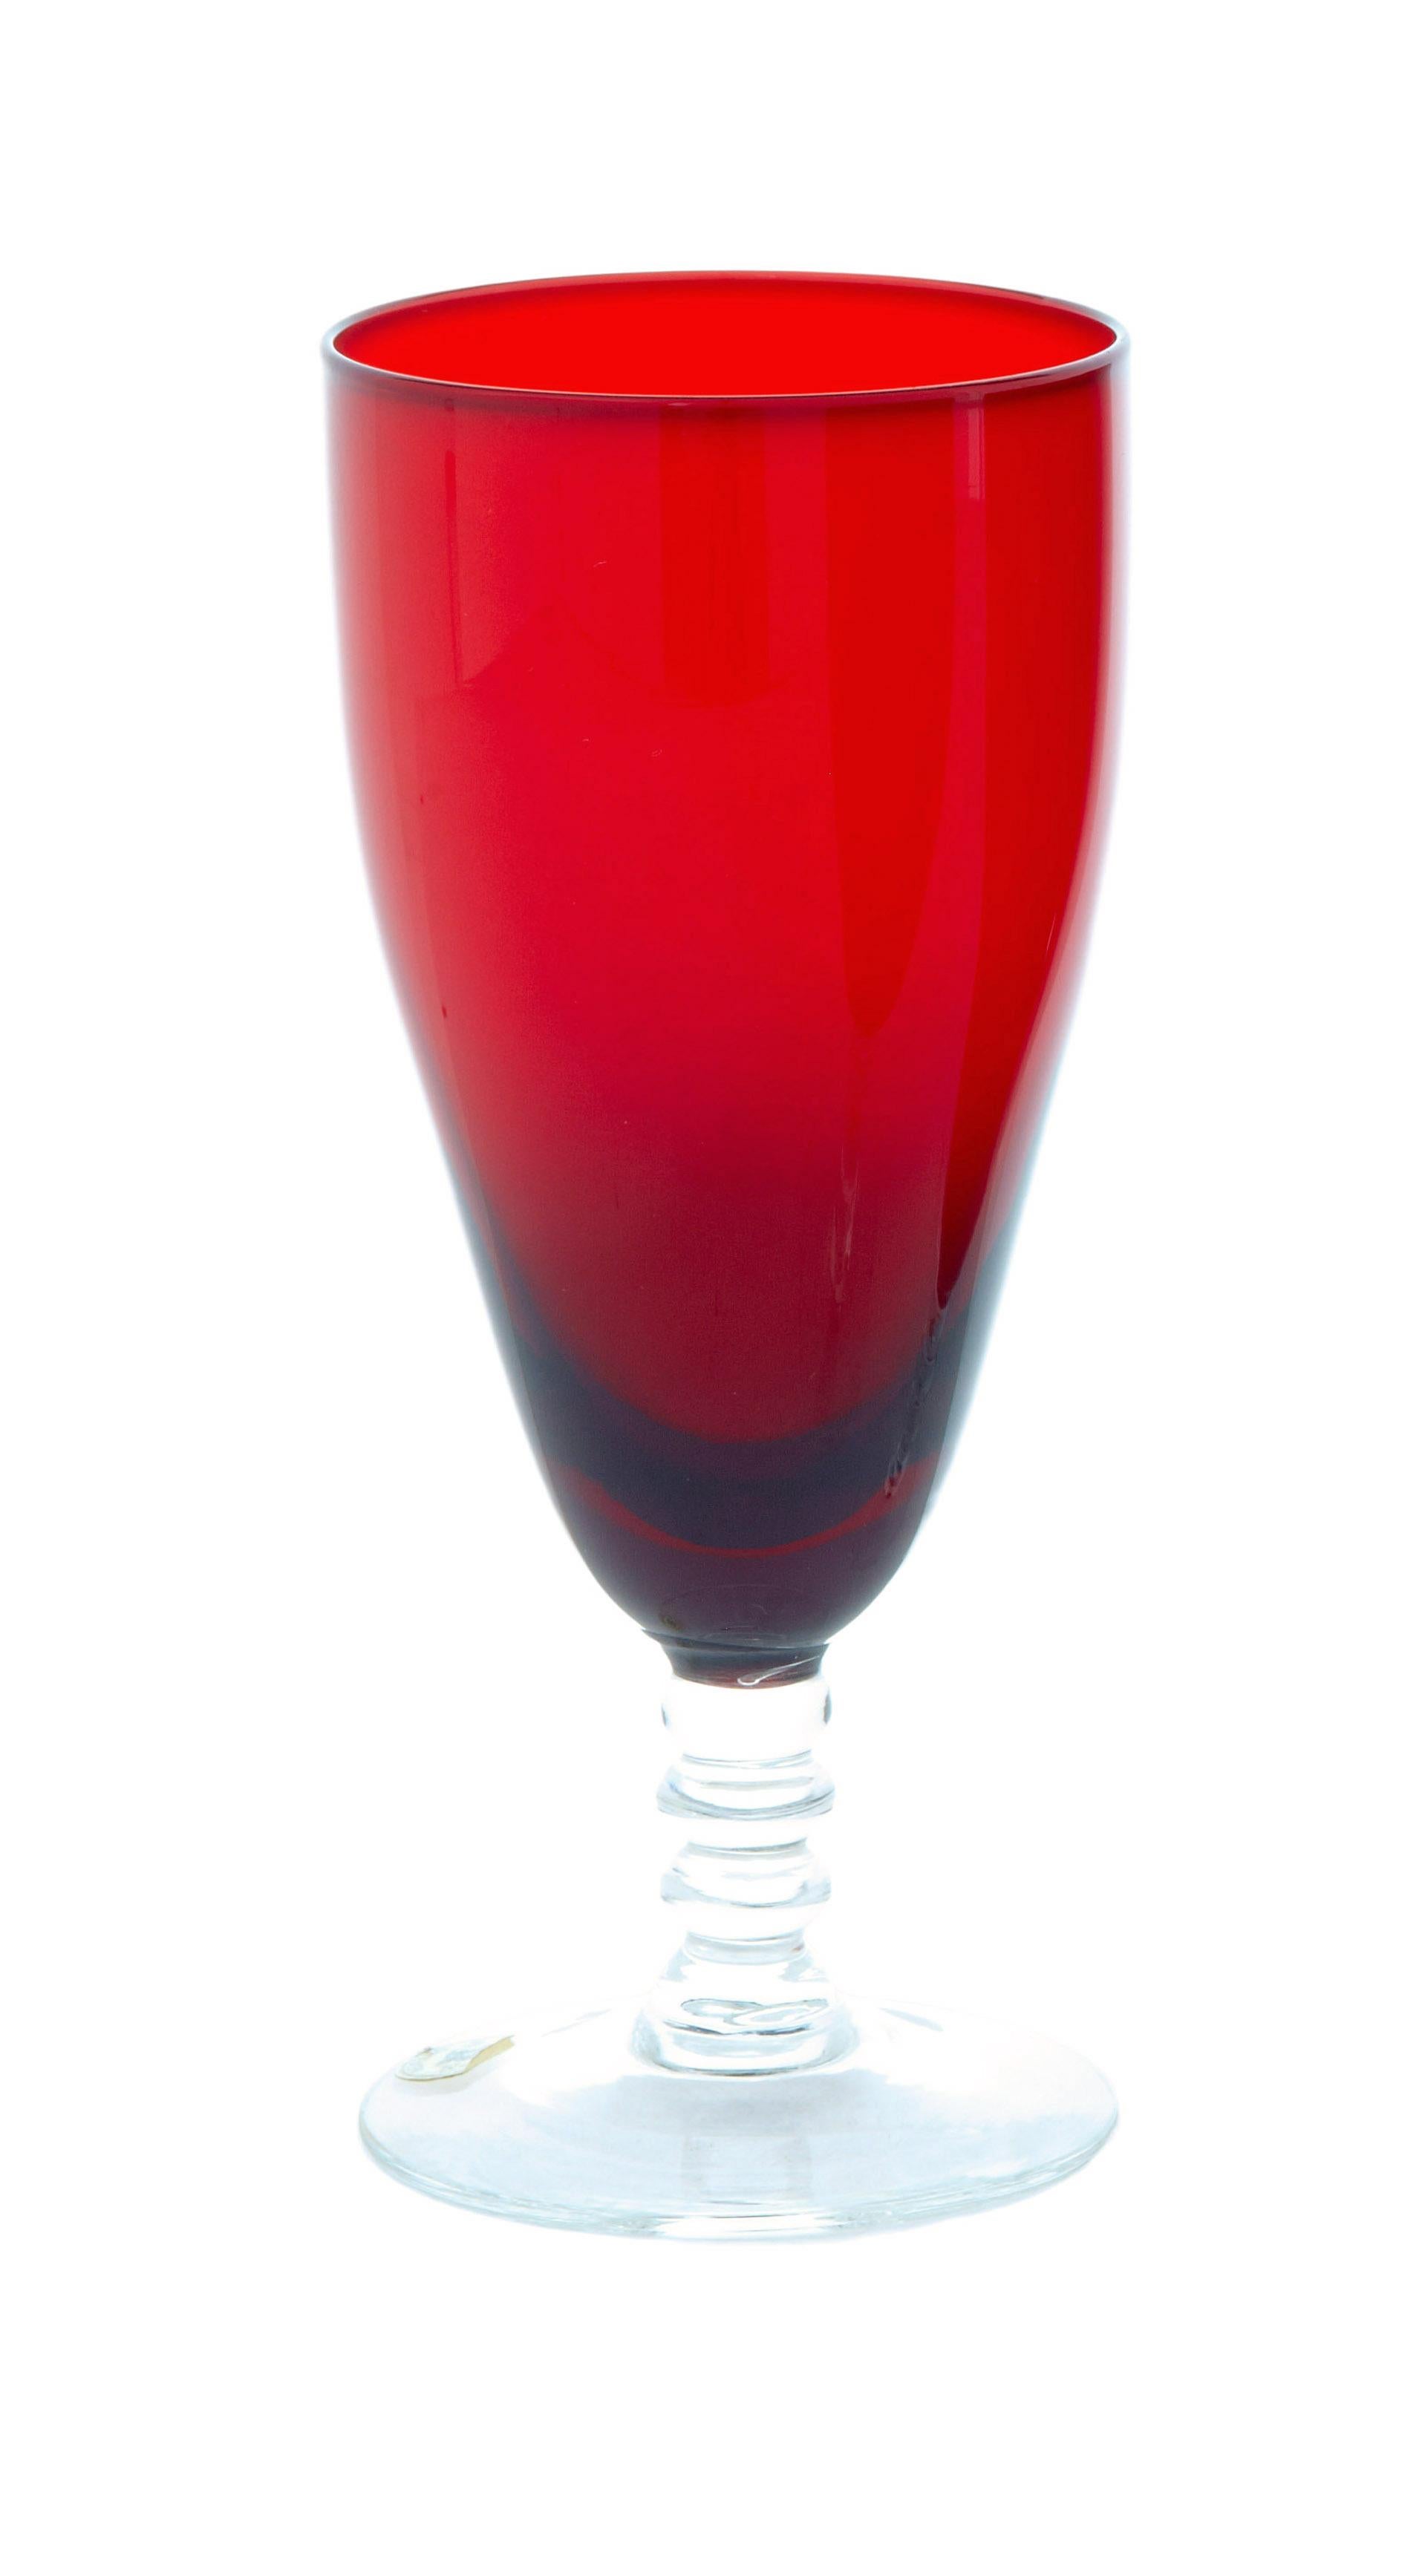 Ensemble de 4 verres à vin rouge scandinave des années 1950 par monica Bratt circa 1950.

Monica Bratt (1913-1961) était une artiste suédoise qui travaillait principalement dans le domaine de la verrerie à la verrerie de Reijmyre.

Superbe ensemble